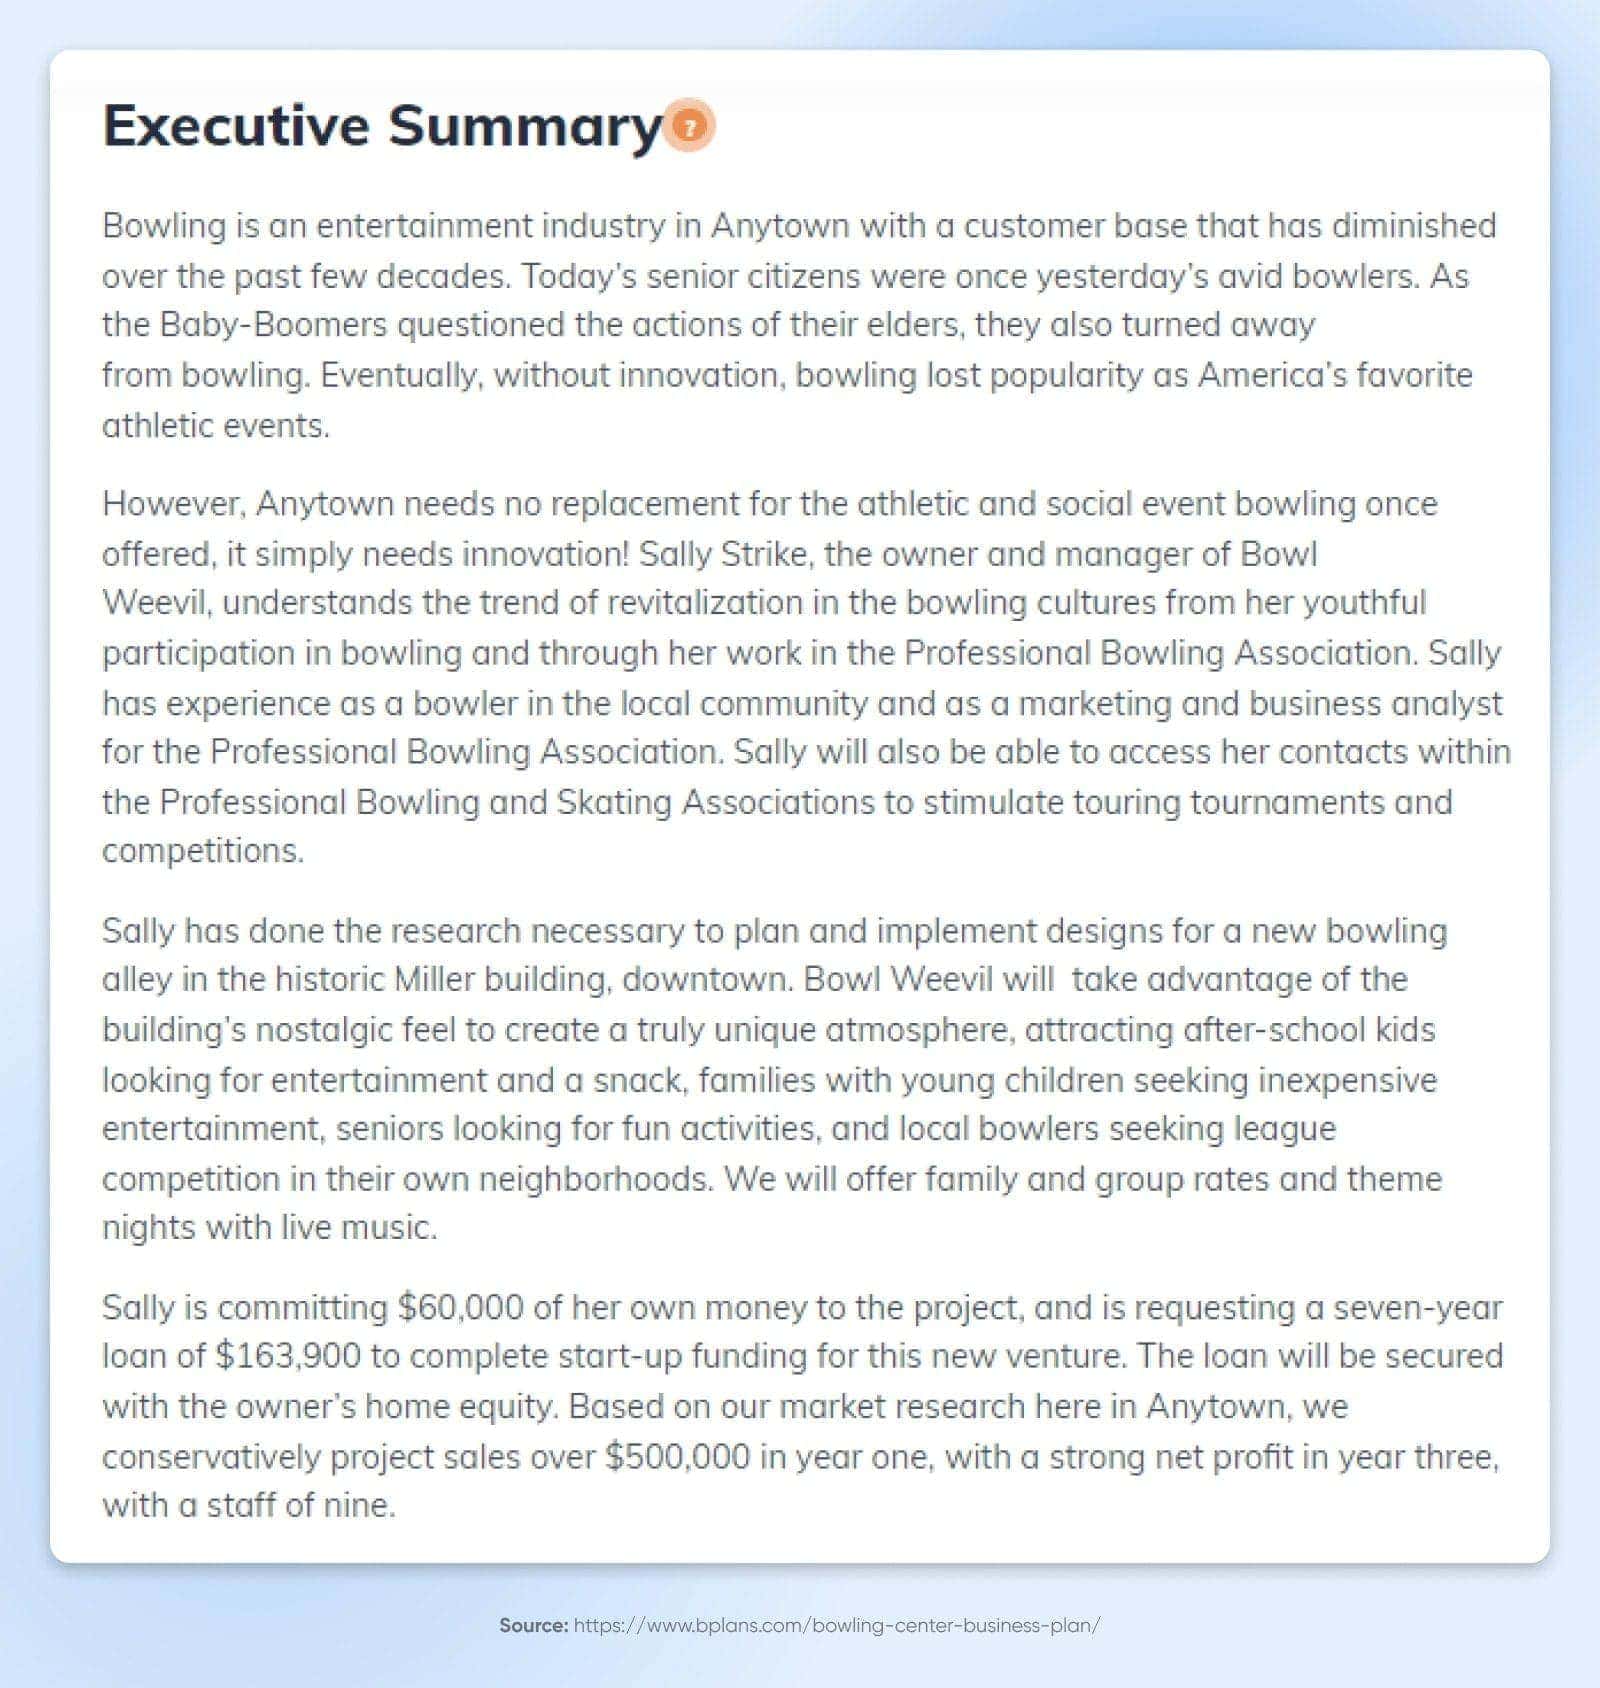 Weiße Seite auf einem Hintergrund mit blauem Farbverlauf für ein Executive Summary-Dokument.